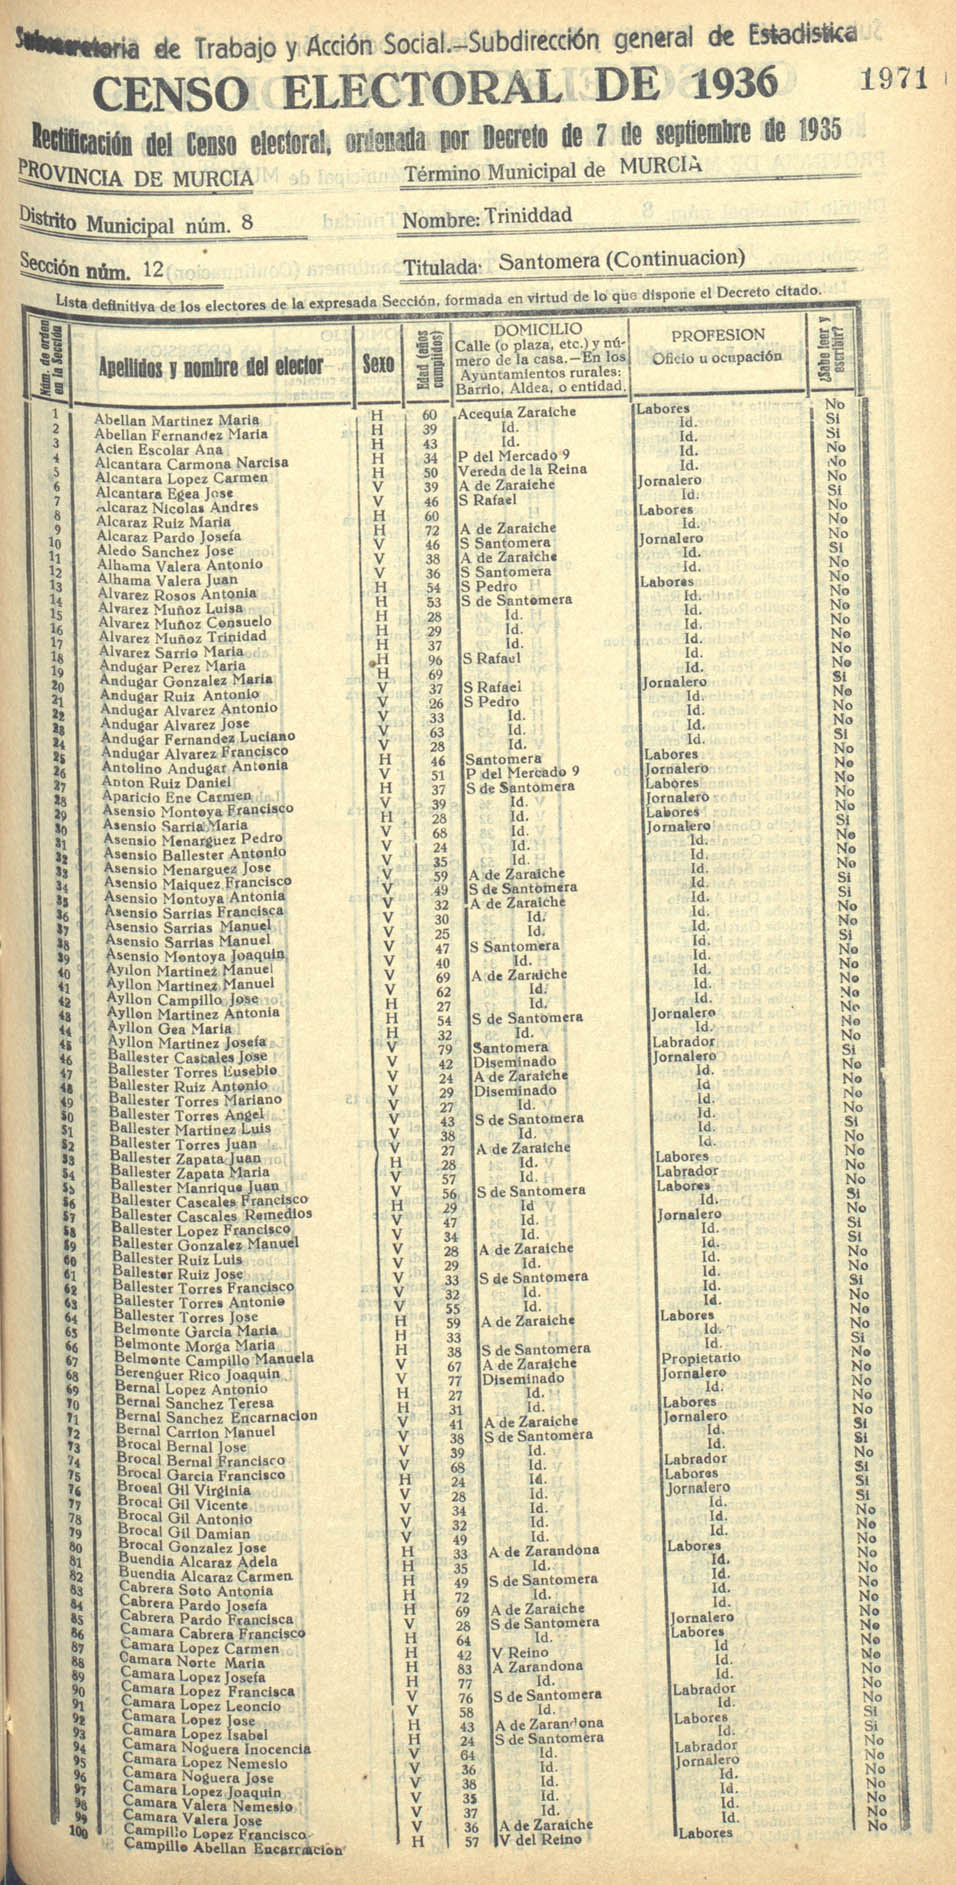 Censo electoral provincial de 1936. Murcia. Distrito 8º, Trinidad. Sección 12ª, Santomera (continuación)